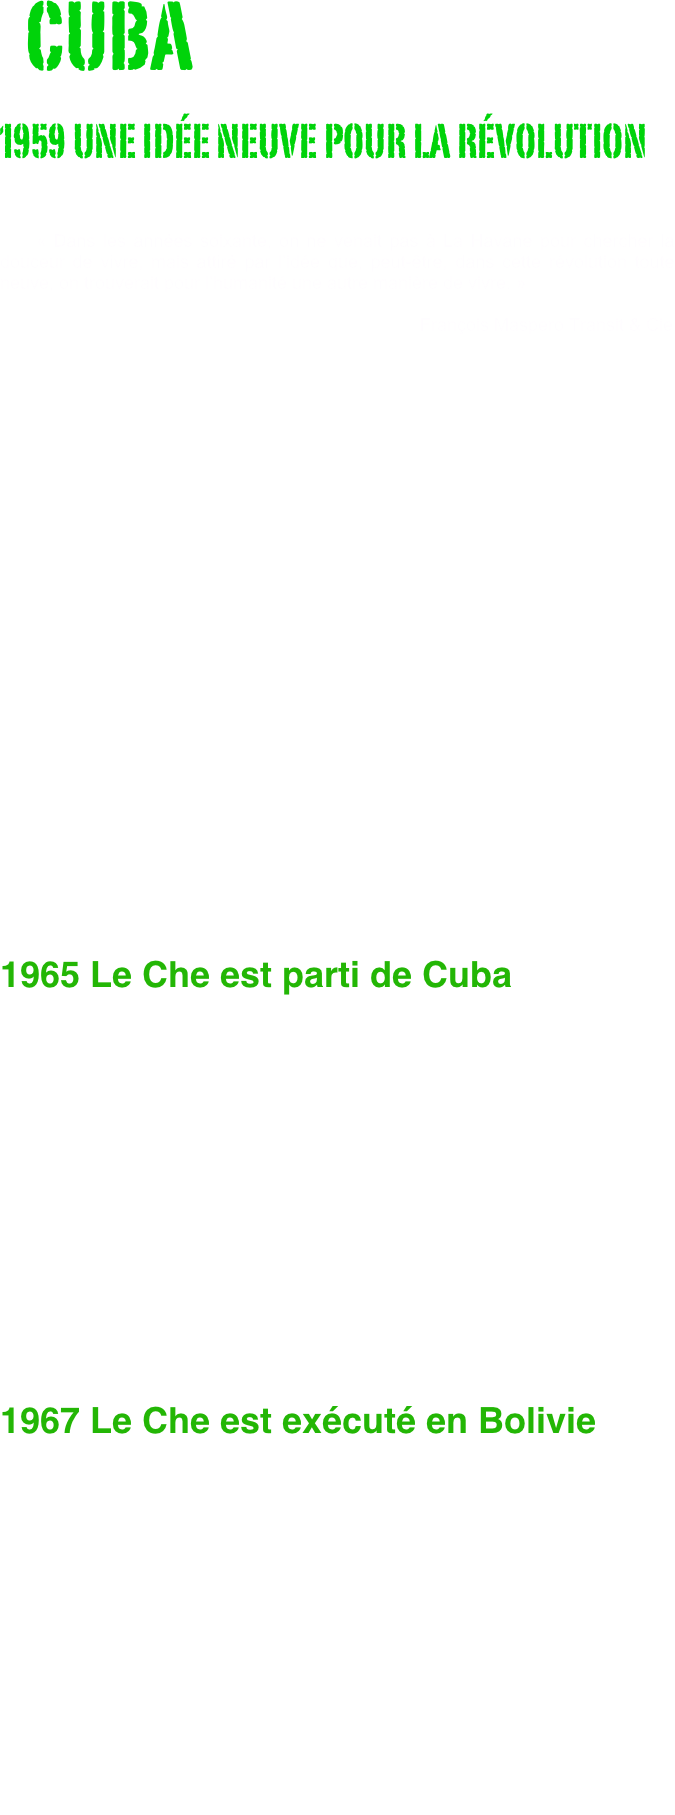   CUBA
1959 UNE IDÉE NEUVE POUR LA RÉVOLUTION
                              
                                
    « Dans les années soixante, on ne venait pas à La Havane pour chercher la douceur de vivre, mais attiré par l’idée que, peut-être, dans cette révolution toute neuve, on trouverait pour l’humanité une autre manière de vivre. »                    
                                                                                    François Maspero Transit & Cie






















1965 Le Che est parti de Cuba


 
    Une poignée de jeunes gens avaient entrepris en 1959, comme l’a écrit Régis Debray, de « réinventer la révolution » et le peuple cubain les avait pris au mot : en 1963, réforme agraire, nationalisations, alphabétisation, éliminations de la corruption et de la dépendance, tout cela avait un sens, méritait d'être défendu et dessinait un avenir que l’on pouvait sentir à portée de main et non seulement à portée de rêve. Le choix entre la violence de l’économie de marché américaine et la violence de la coercition soviétique n’était plus la seule alternative. 
    Le Che est parti de Cuba en 1965, parce qu’il a eu des divergences politiques avec Fidel Castro. 
    Il cherchait à vaincre les difficultés en fonction d’un but immuable : la nécessité de changer une réalité, celle de l’inégalité imposée aux peuples d’Amérique latine, “las”, suivant ses propres termes, « d’être opprimés, persécutés, exploités à l’extrême ». Fidel, certes, ne parlait pas autrement. Mais, sous le discours, il érigeait son maintien au pouvoir comme condition absolue de la réalisation de ce but, remplaçant tout bonnement, à son profit, la fin par les moyens.

1967 Le Che est exécuté en Bolivie

    Le Che, terrible empêcheur de tourner en rond, gênait tout le monde. Pour Washington, ses mises en cause radicales de l’ordre planétaire étaient un intolérable danger pour le maintien de la domination américaine : il était l’homme à abattre. Pour Moscou, lorsque, après cinq ans d’expérience, il en est venu à remettre également en cause les paradis socialistes, auxquels, de toute évidence, il avait longtemps cru, il est devenu également l’homme à abattre. Le Che est allé en Bolivie pour des raisons politiques, la guérilla étant pour lui, de par son expérience, la continuation de la politique par d’autres moyens et, dans la situation donnée, le seul moyen politique d’atteindre le but poursuivi.     Deux ans avant son exécution physique en 1967 en Bolivie, le Che a fait l’objet d'une liquidation politique. De la première découle la seconde. Si le Che a été tué en Bolivie, c’est parce qu’il y a eu, finalement, un consensus pour tuer le projet dont il était porteur et qui l’avait conduit là.                                                         François Maspero Extraits de la préface 
                                                        Che Guevara, photos de René Burri.






